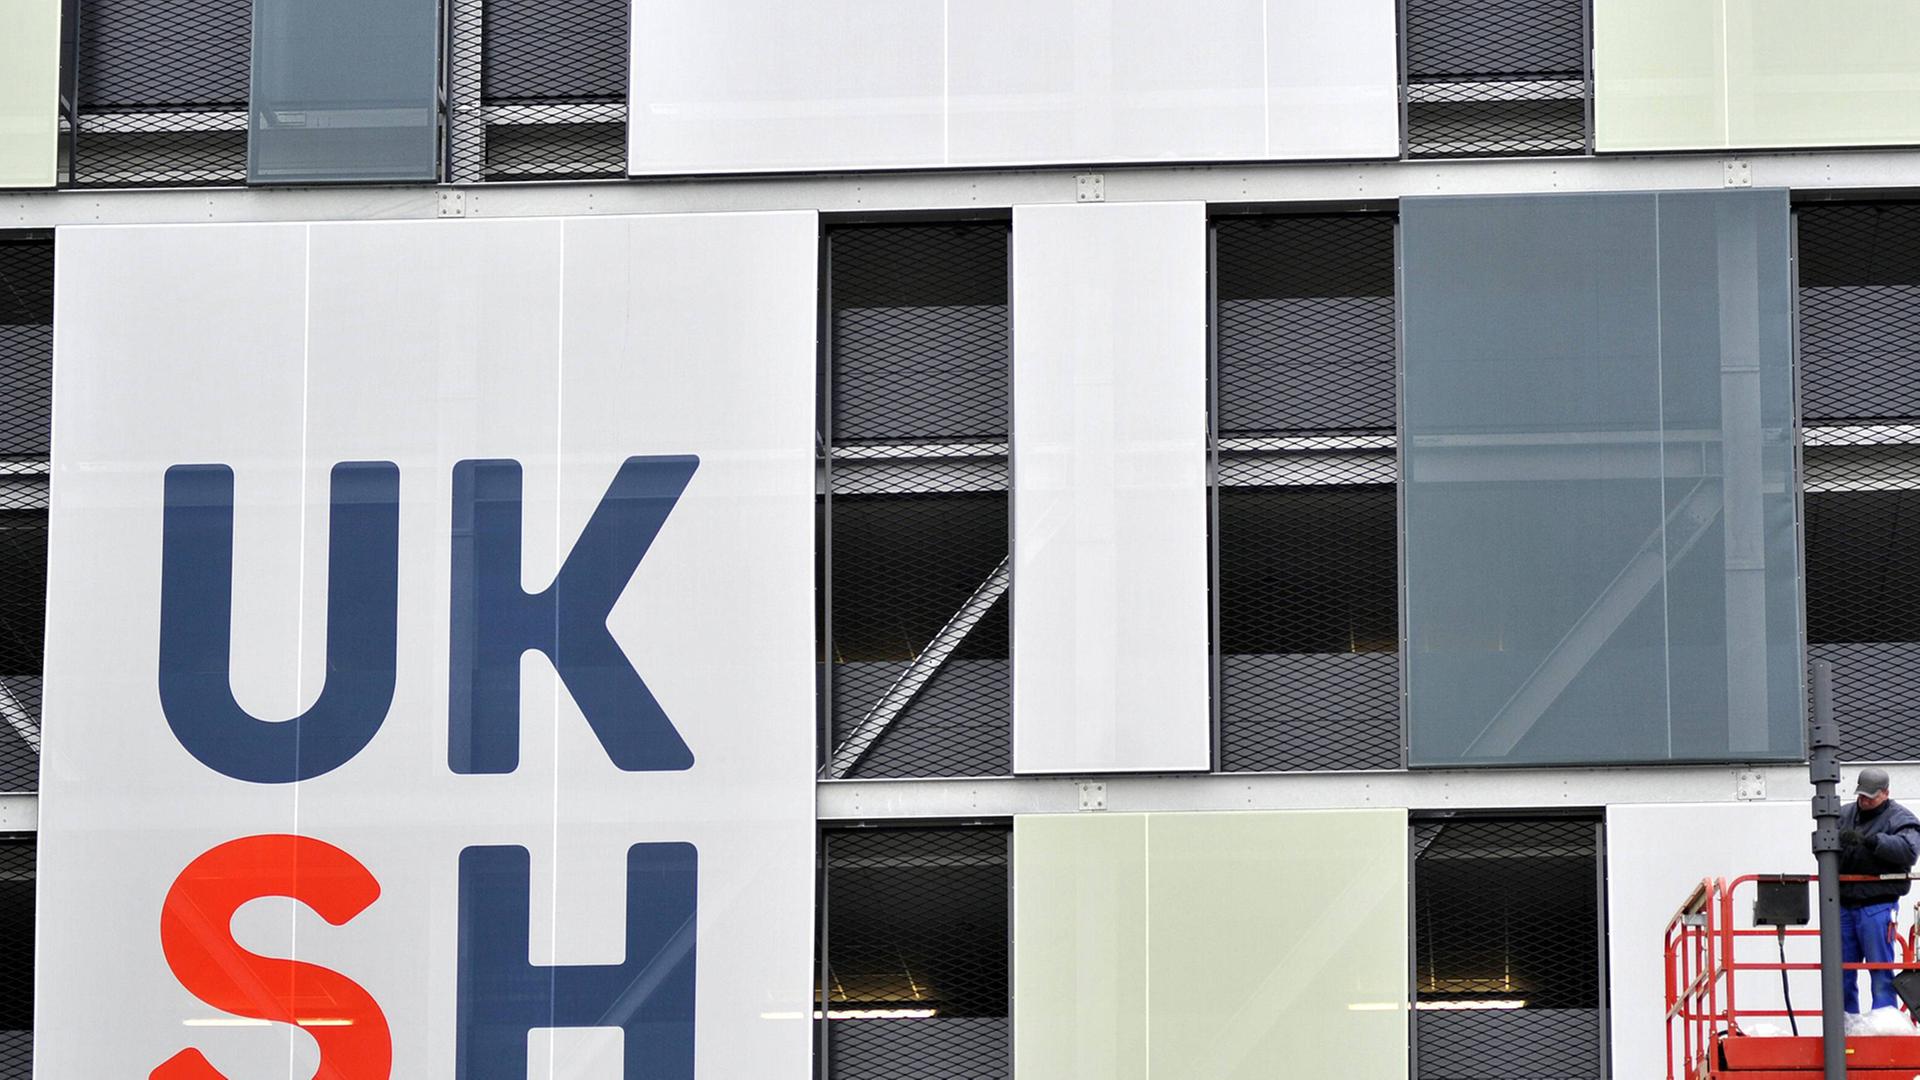 Fassade des Universitätsklinikums in Kiel mit den Buchstaben UKSH, rechts im Bild ein Bauarbeiter auf einem Kran.